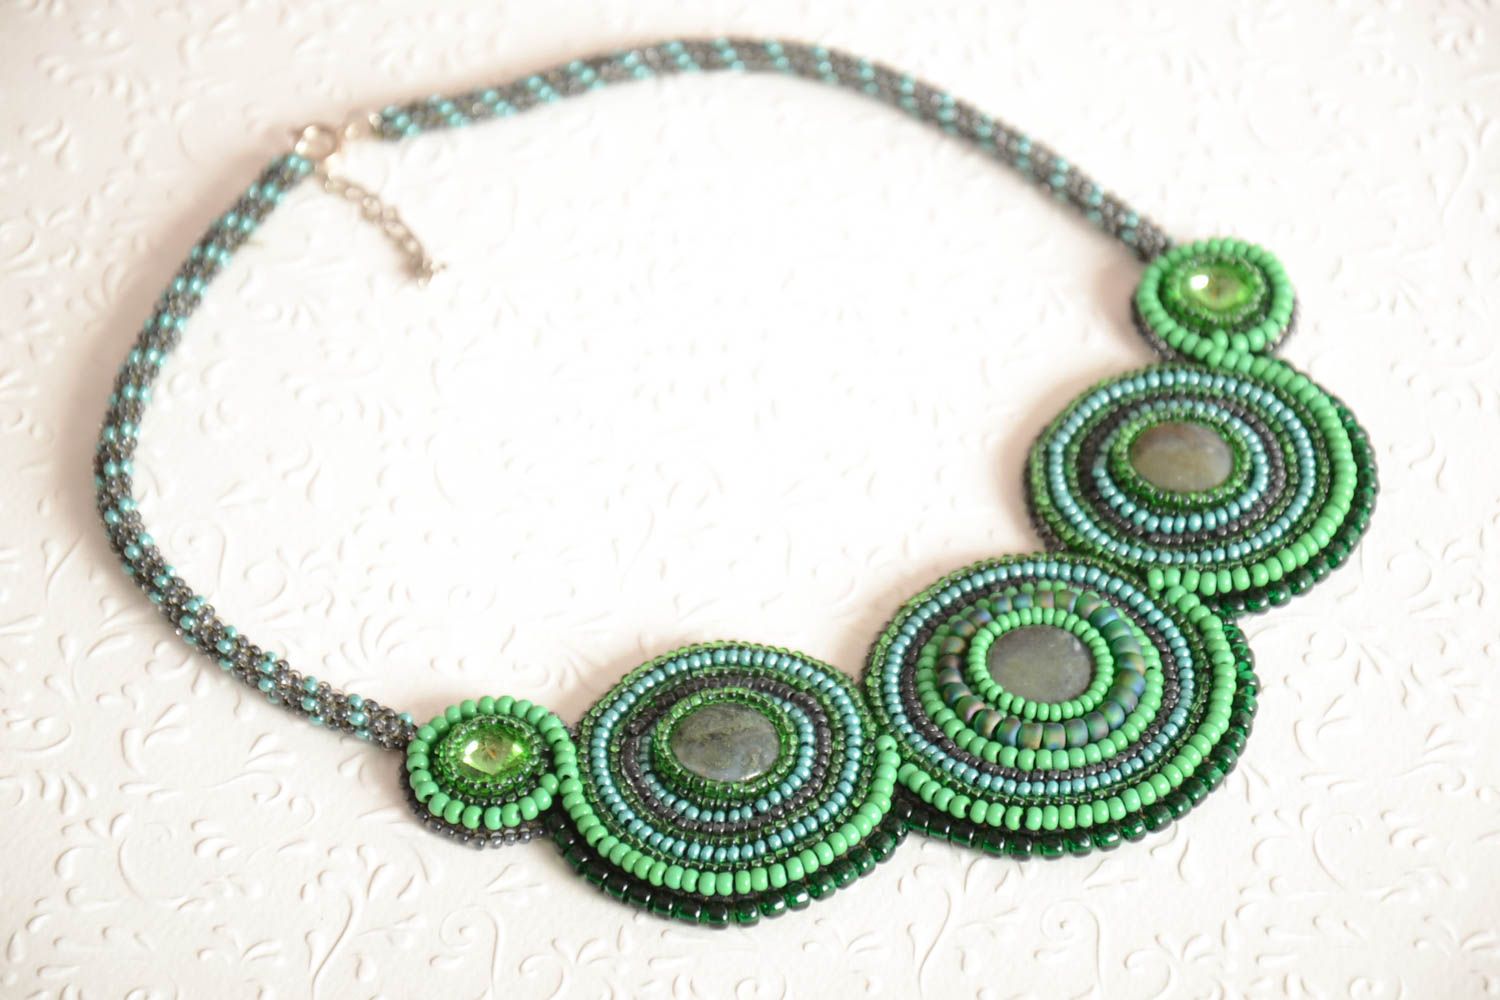 Ожерелье из бисера и натуральных камней на коже ручной работы в зеленых тонах фото 1